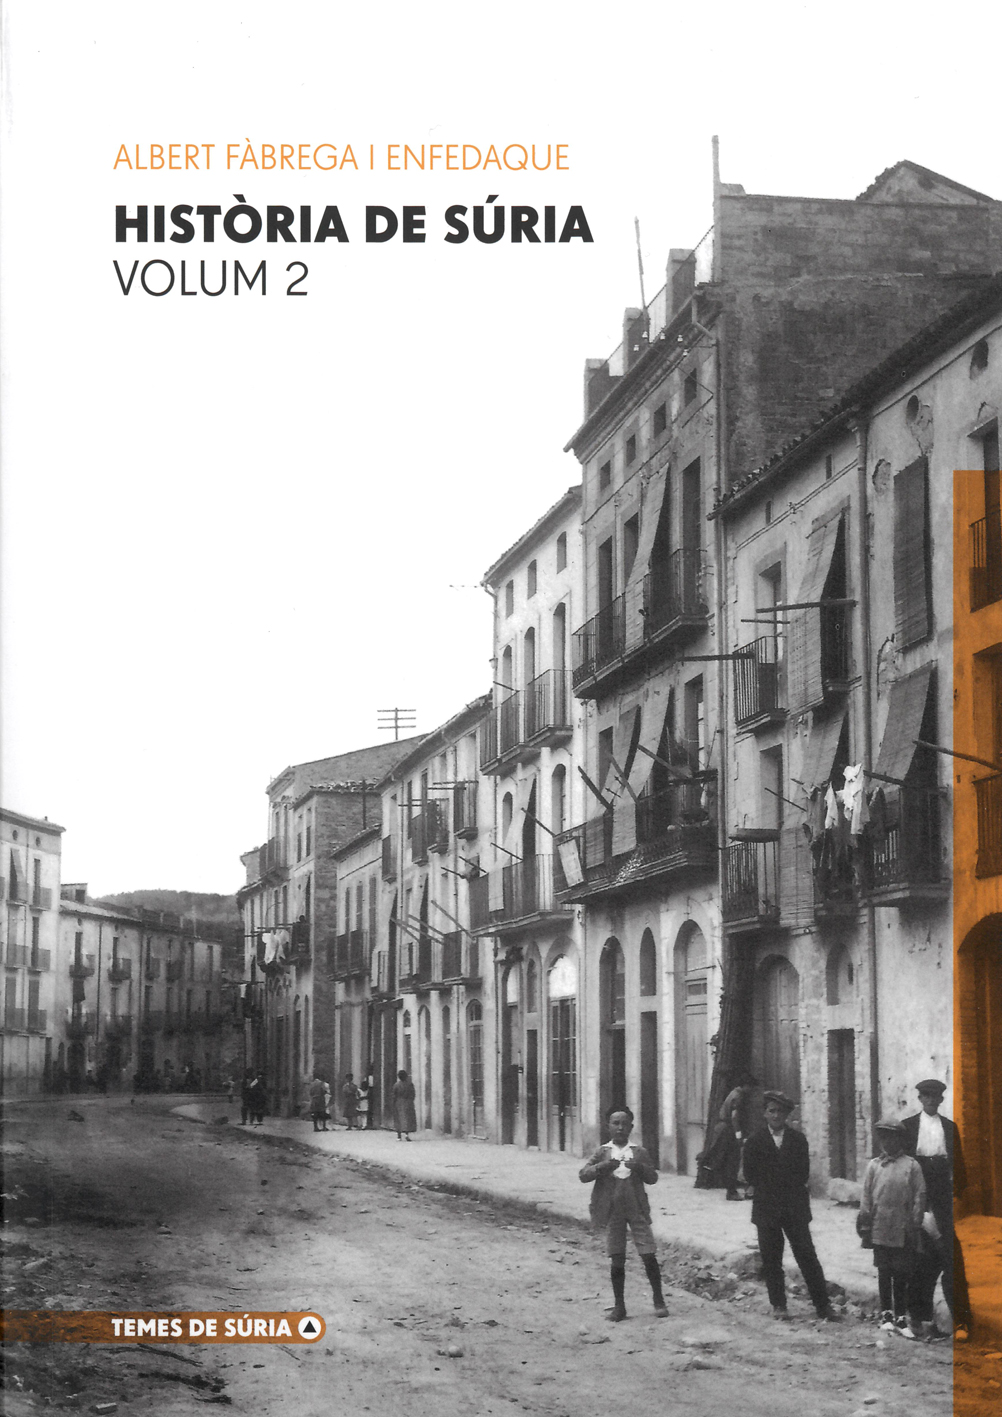 Portada del llibre 'HistÃ²ria de SÃºria. Volum 2' dâ€™Albert FÃ brega, publicat per lâ€™Ajuntament de SÃºria dins de la colÂ·lecciÃ³ 'Temes de SÃºria'.